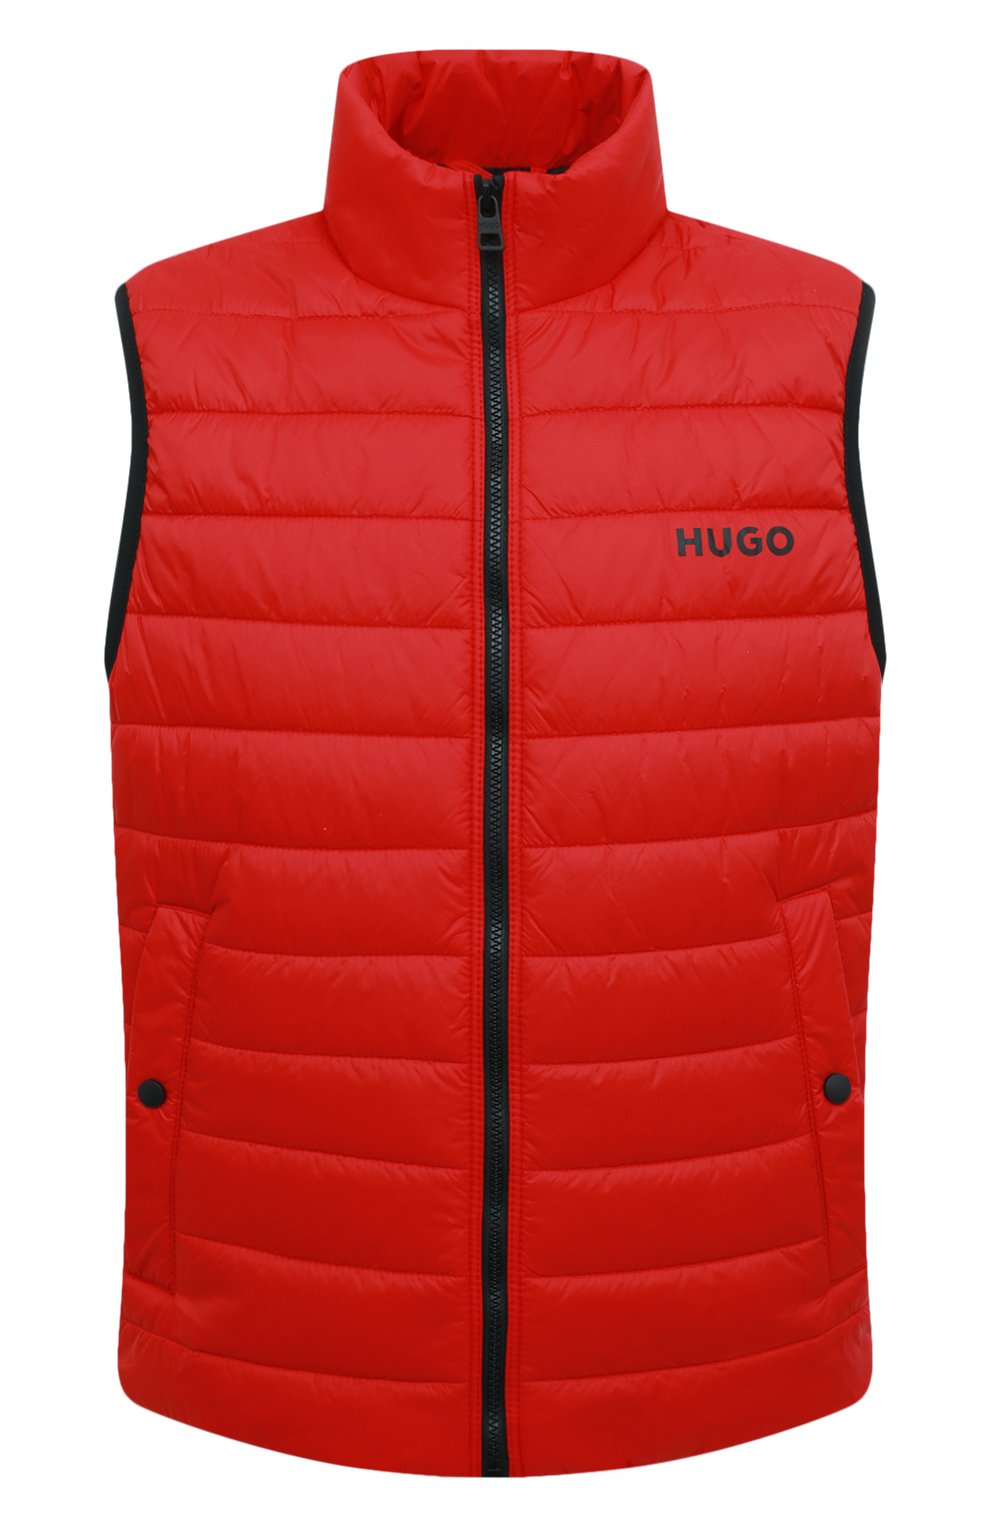 Мужской красный утепленный жилет HUGO купить в интернет-магазине ЦУМ, арт.50468742